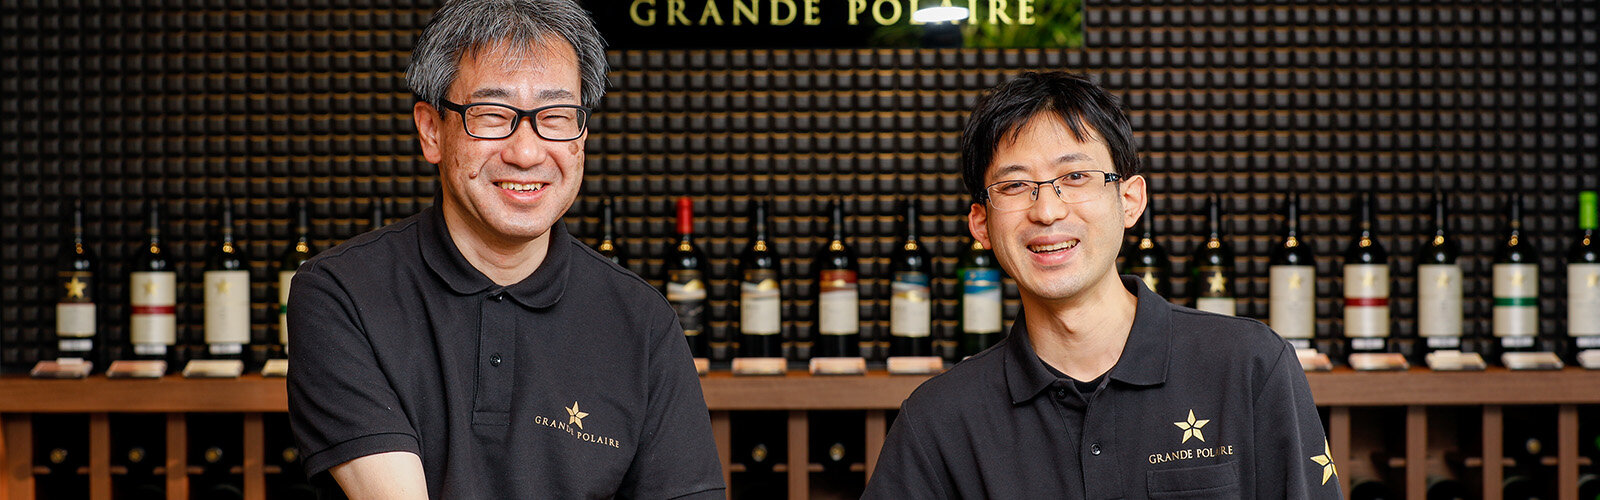 チーフワインメーカーとしてグランポレールを牽引してきた工藤雅義氏,その熱い想いを引き継ぎ、さらなる進化を目指す多田淳氏